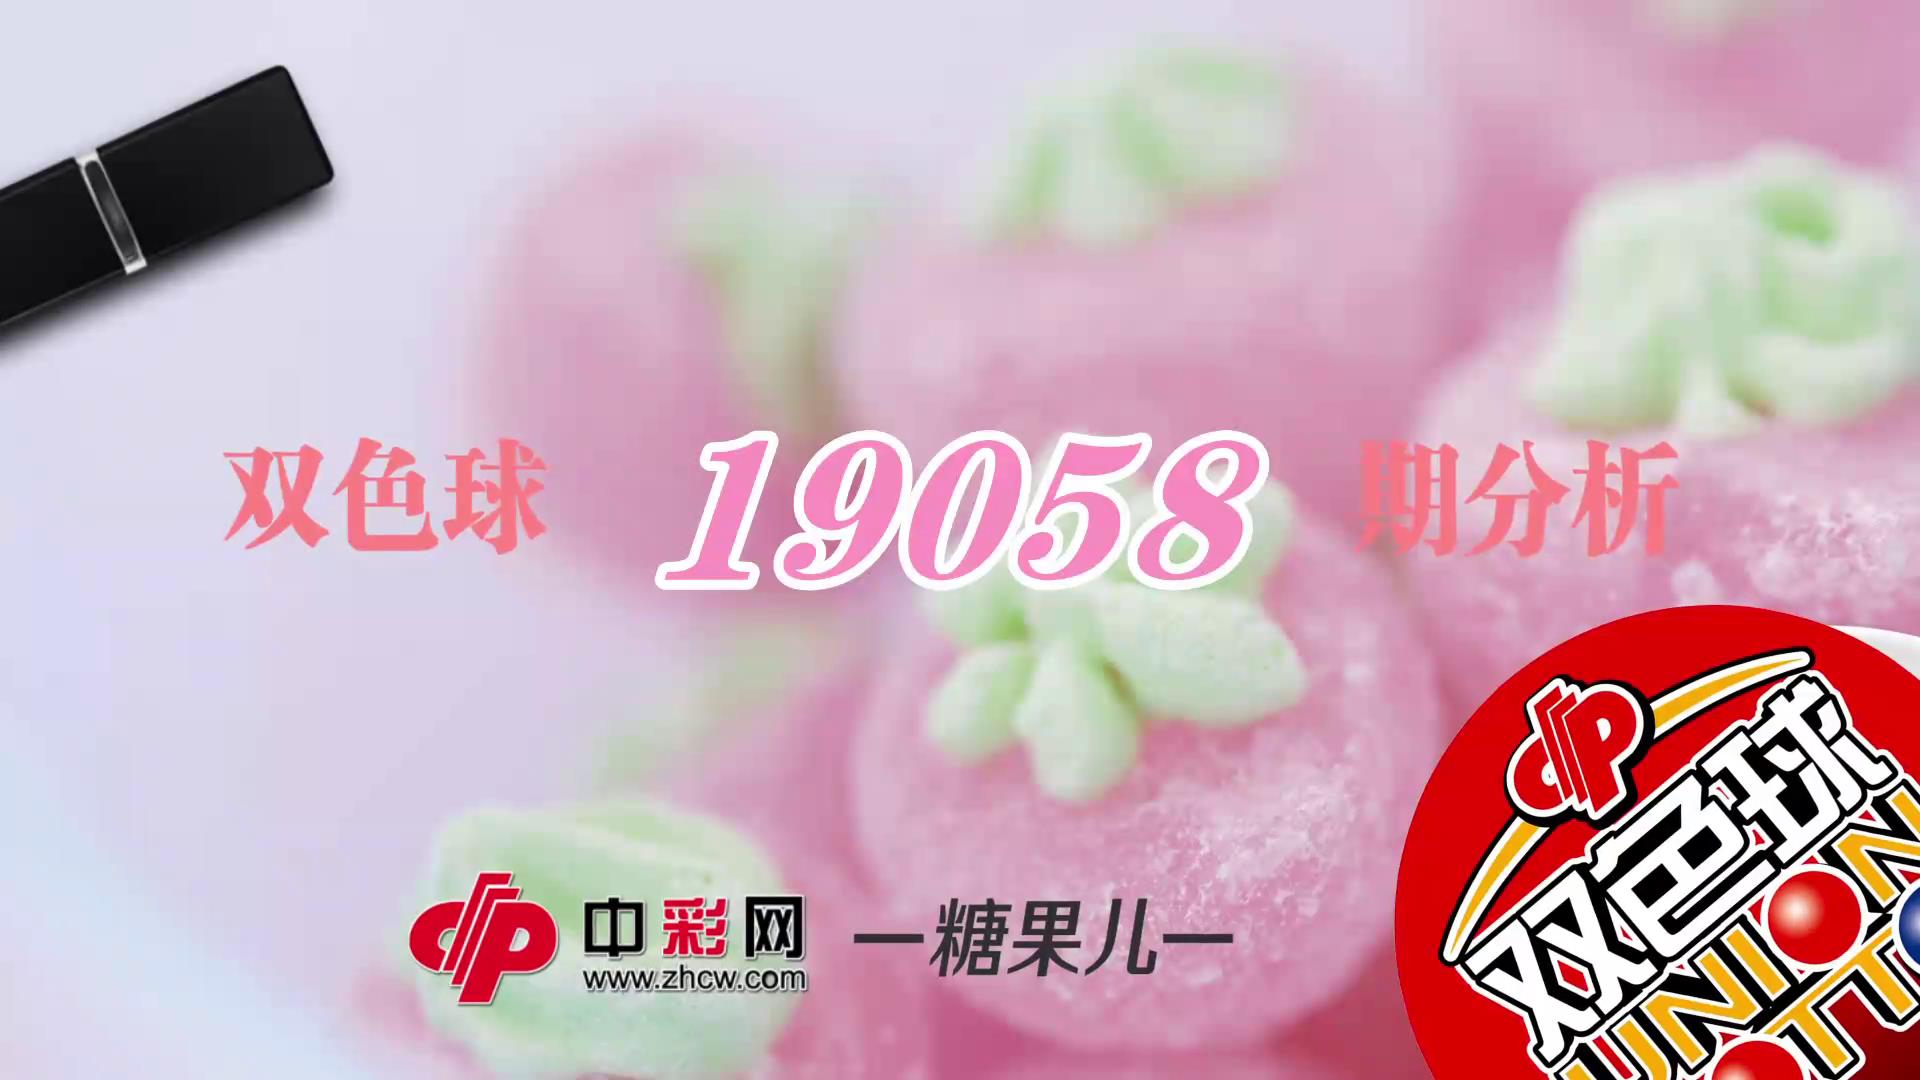 【中彩视频】糖果儿双色球第19058期